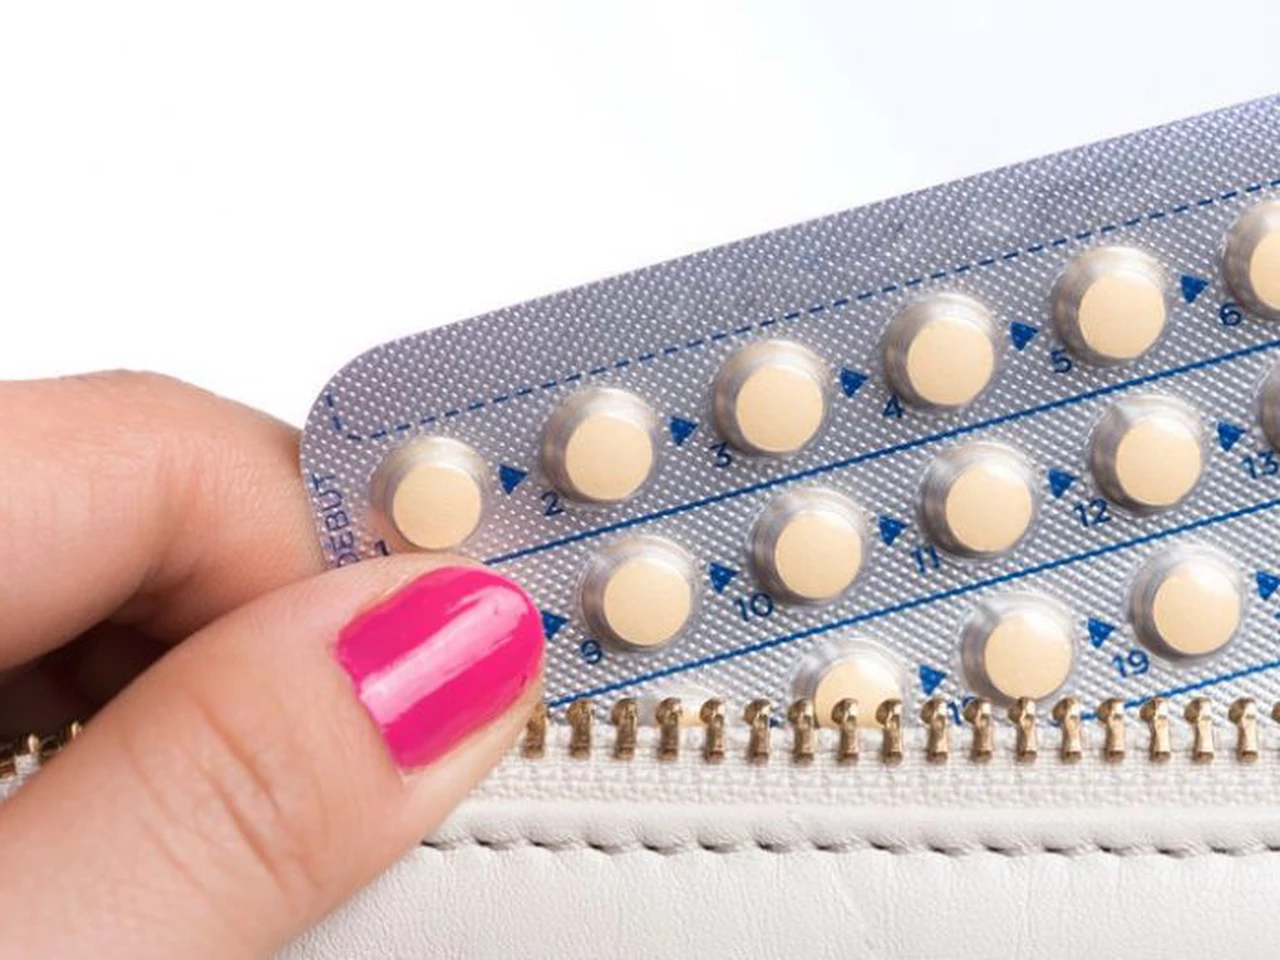 Estudio: las pastillas anticonceptivas podrían provocar depresión